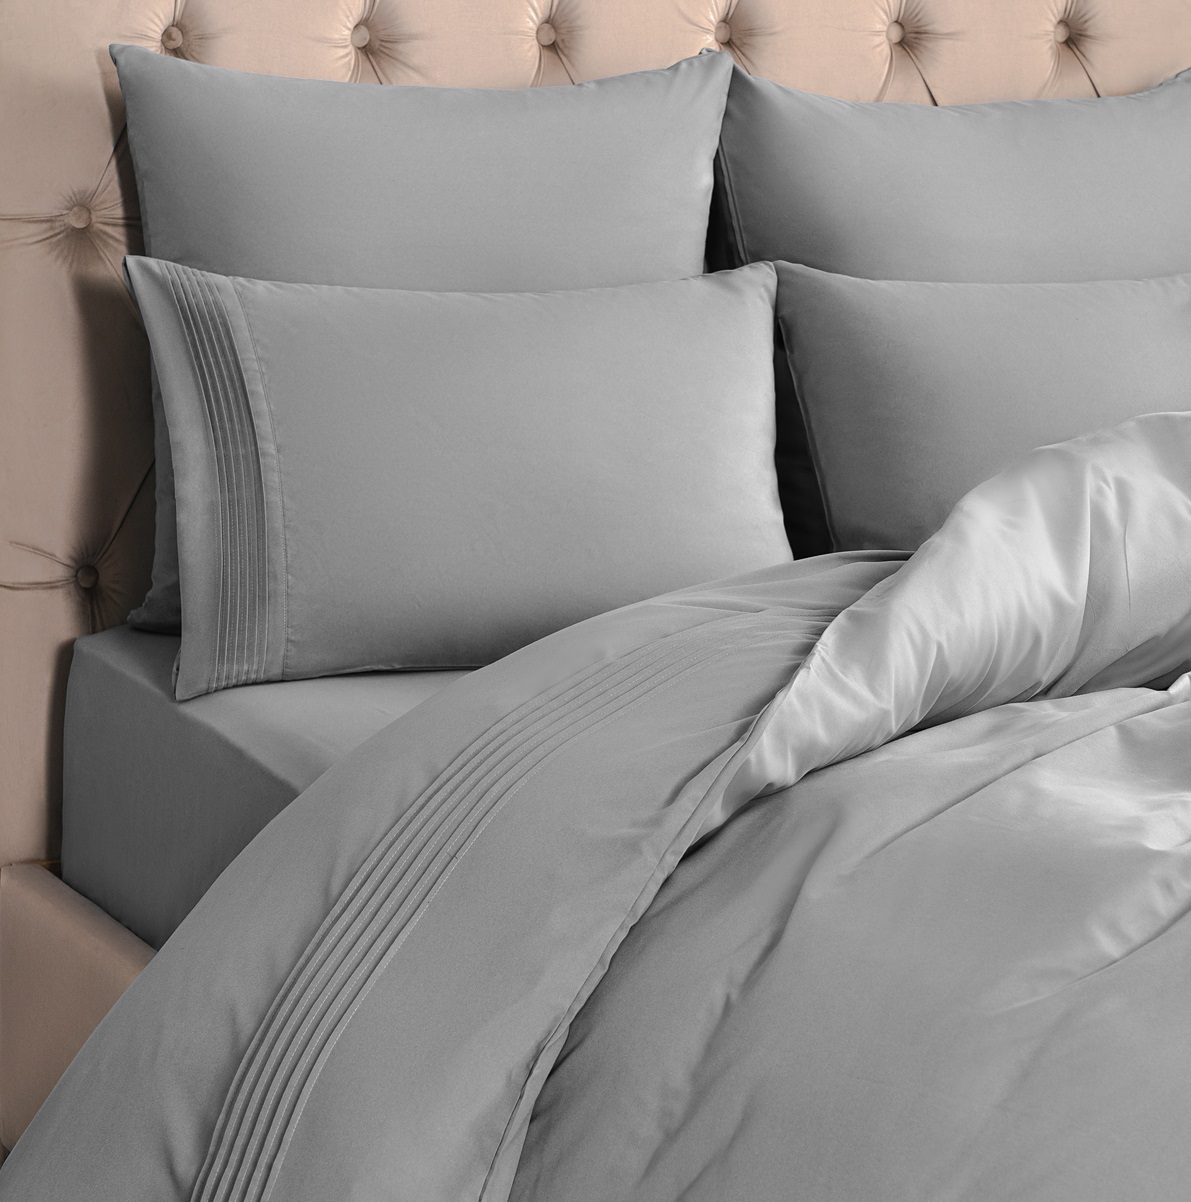 Комплект постельного белья Sleepix Миоко серый Евро, размер Евро - фото 4